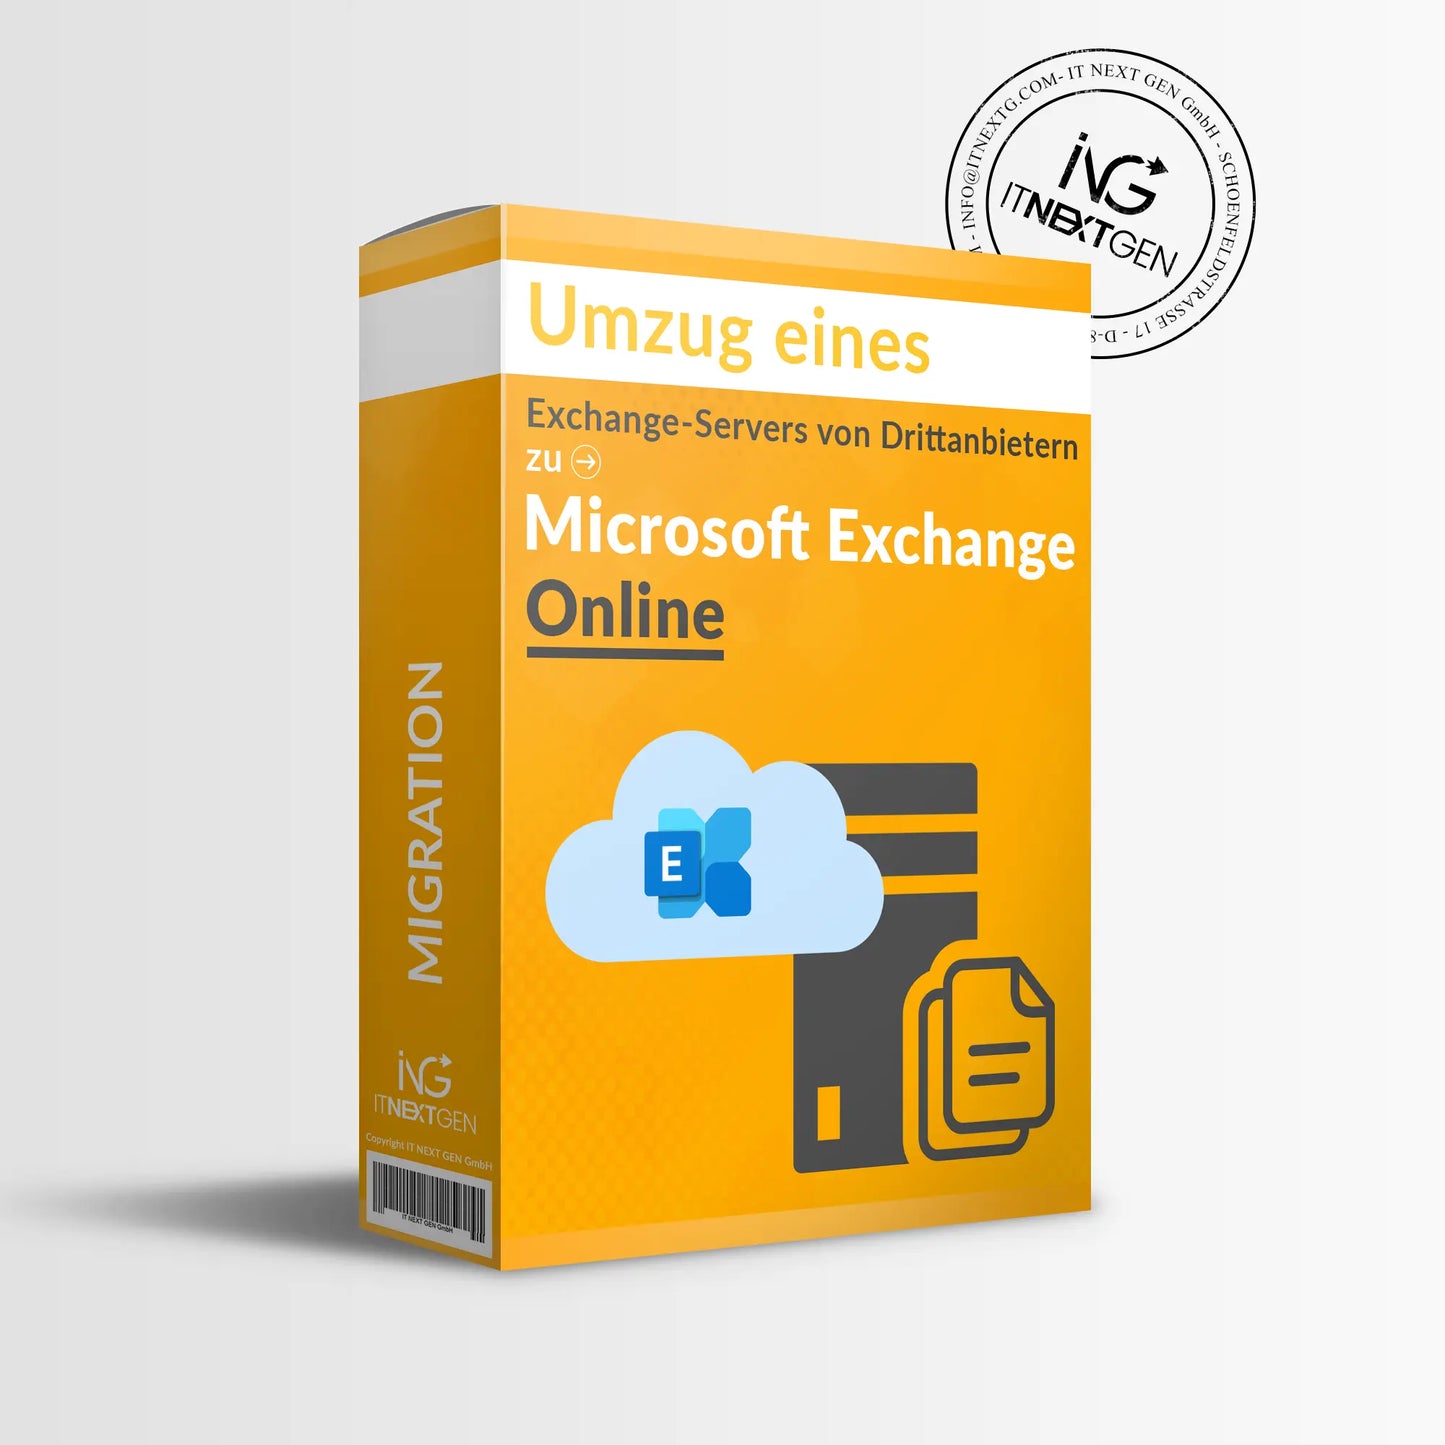 
                  
                    Umzug eines Exchange-Servers von Drittanbietern zu Microsoft Exchange Online
                  
                